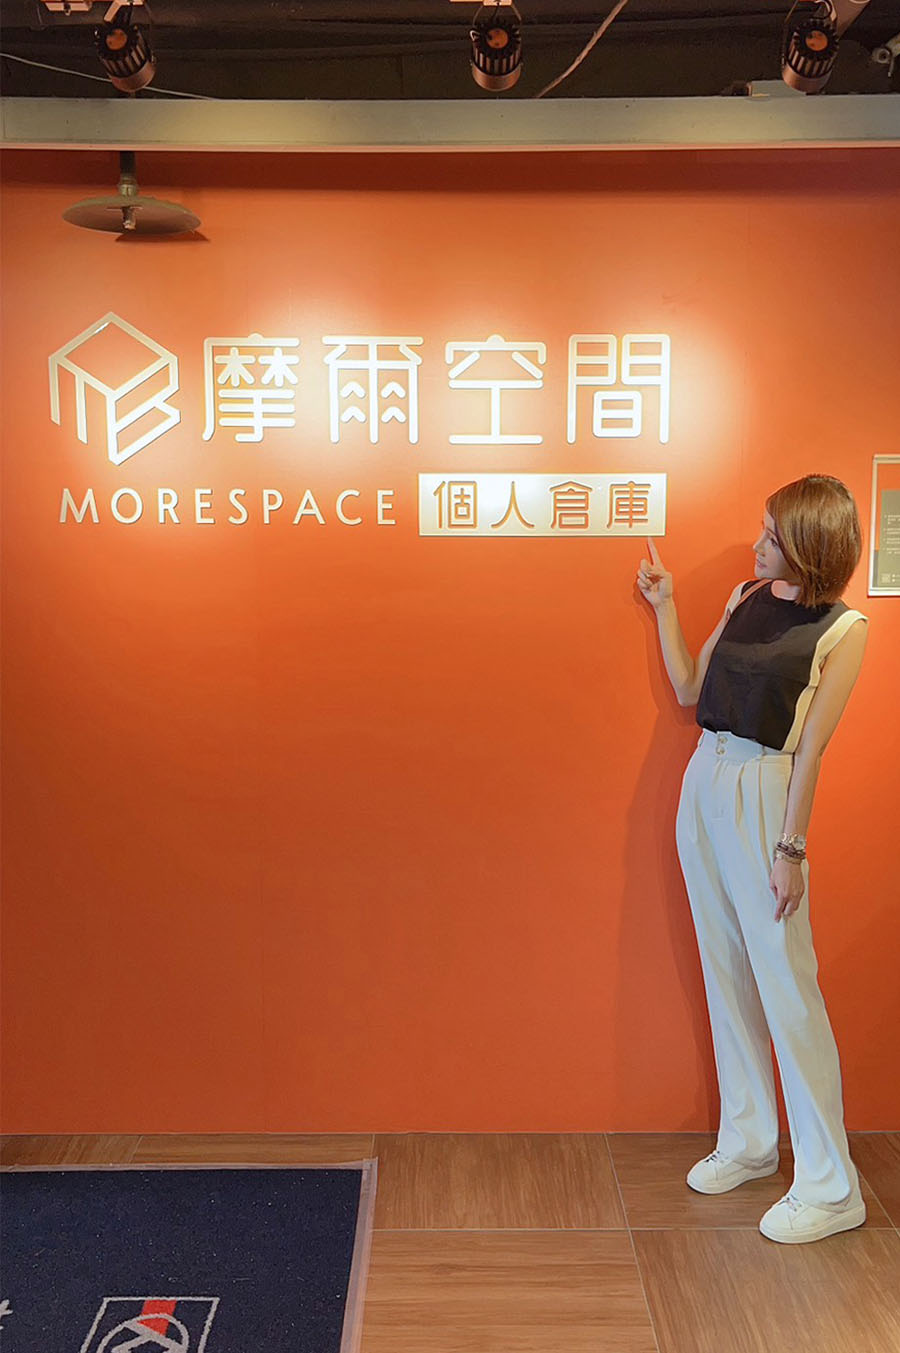 [分享] 摩爾空間Morespace,別讓家中變倉庫,釋放家裡的生活空間,家更寬廣舒適